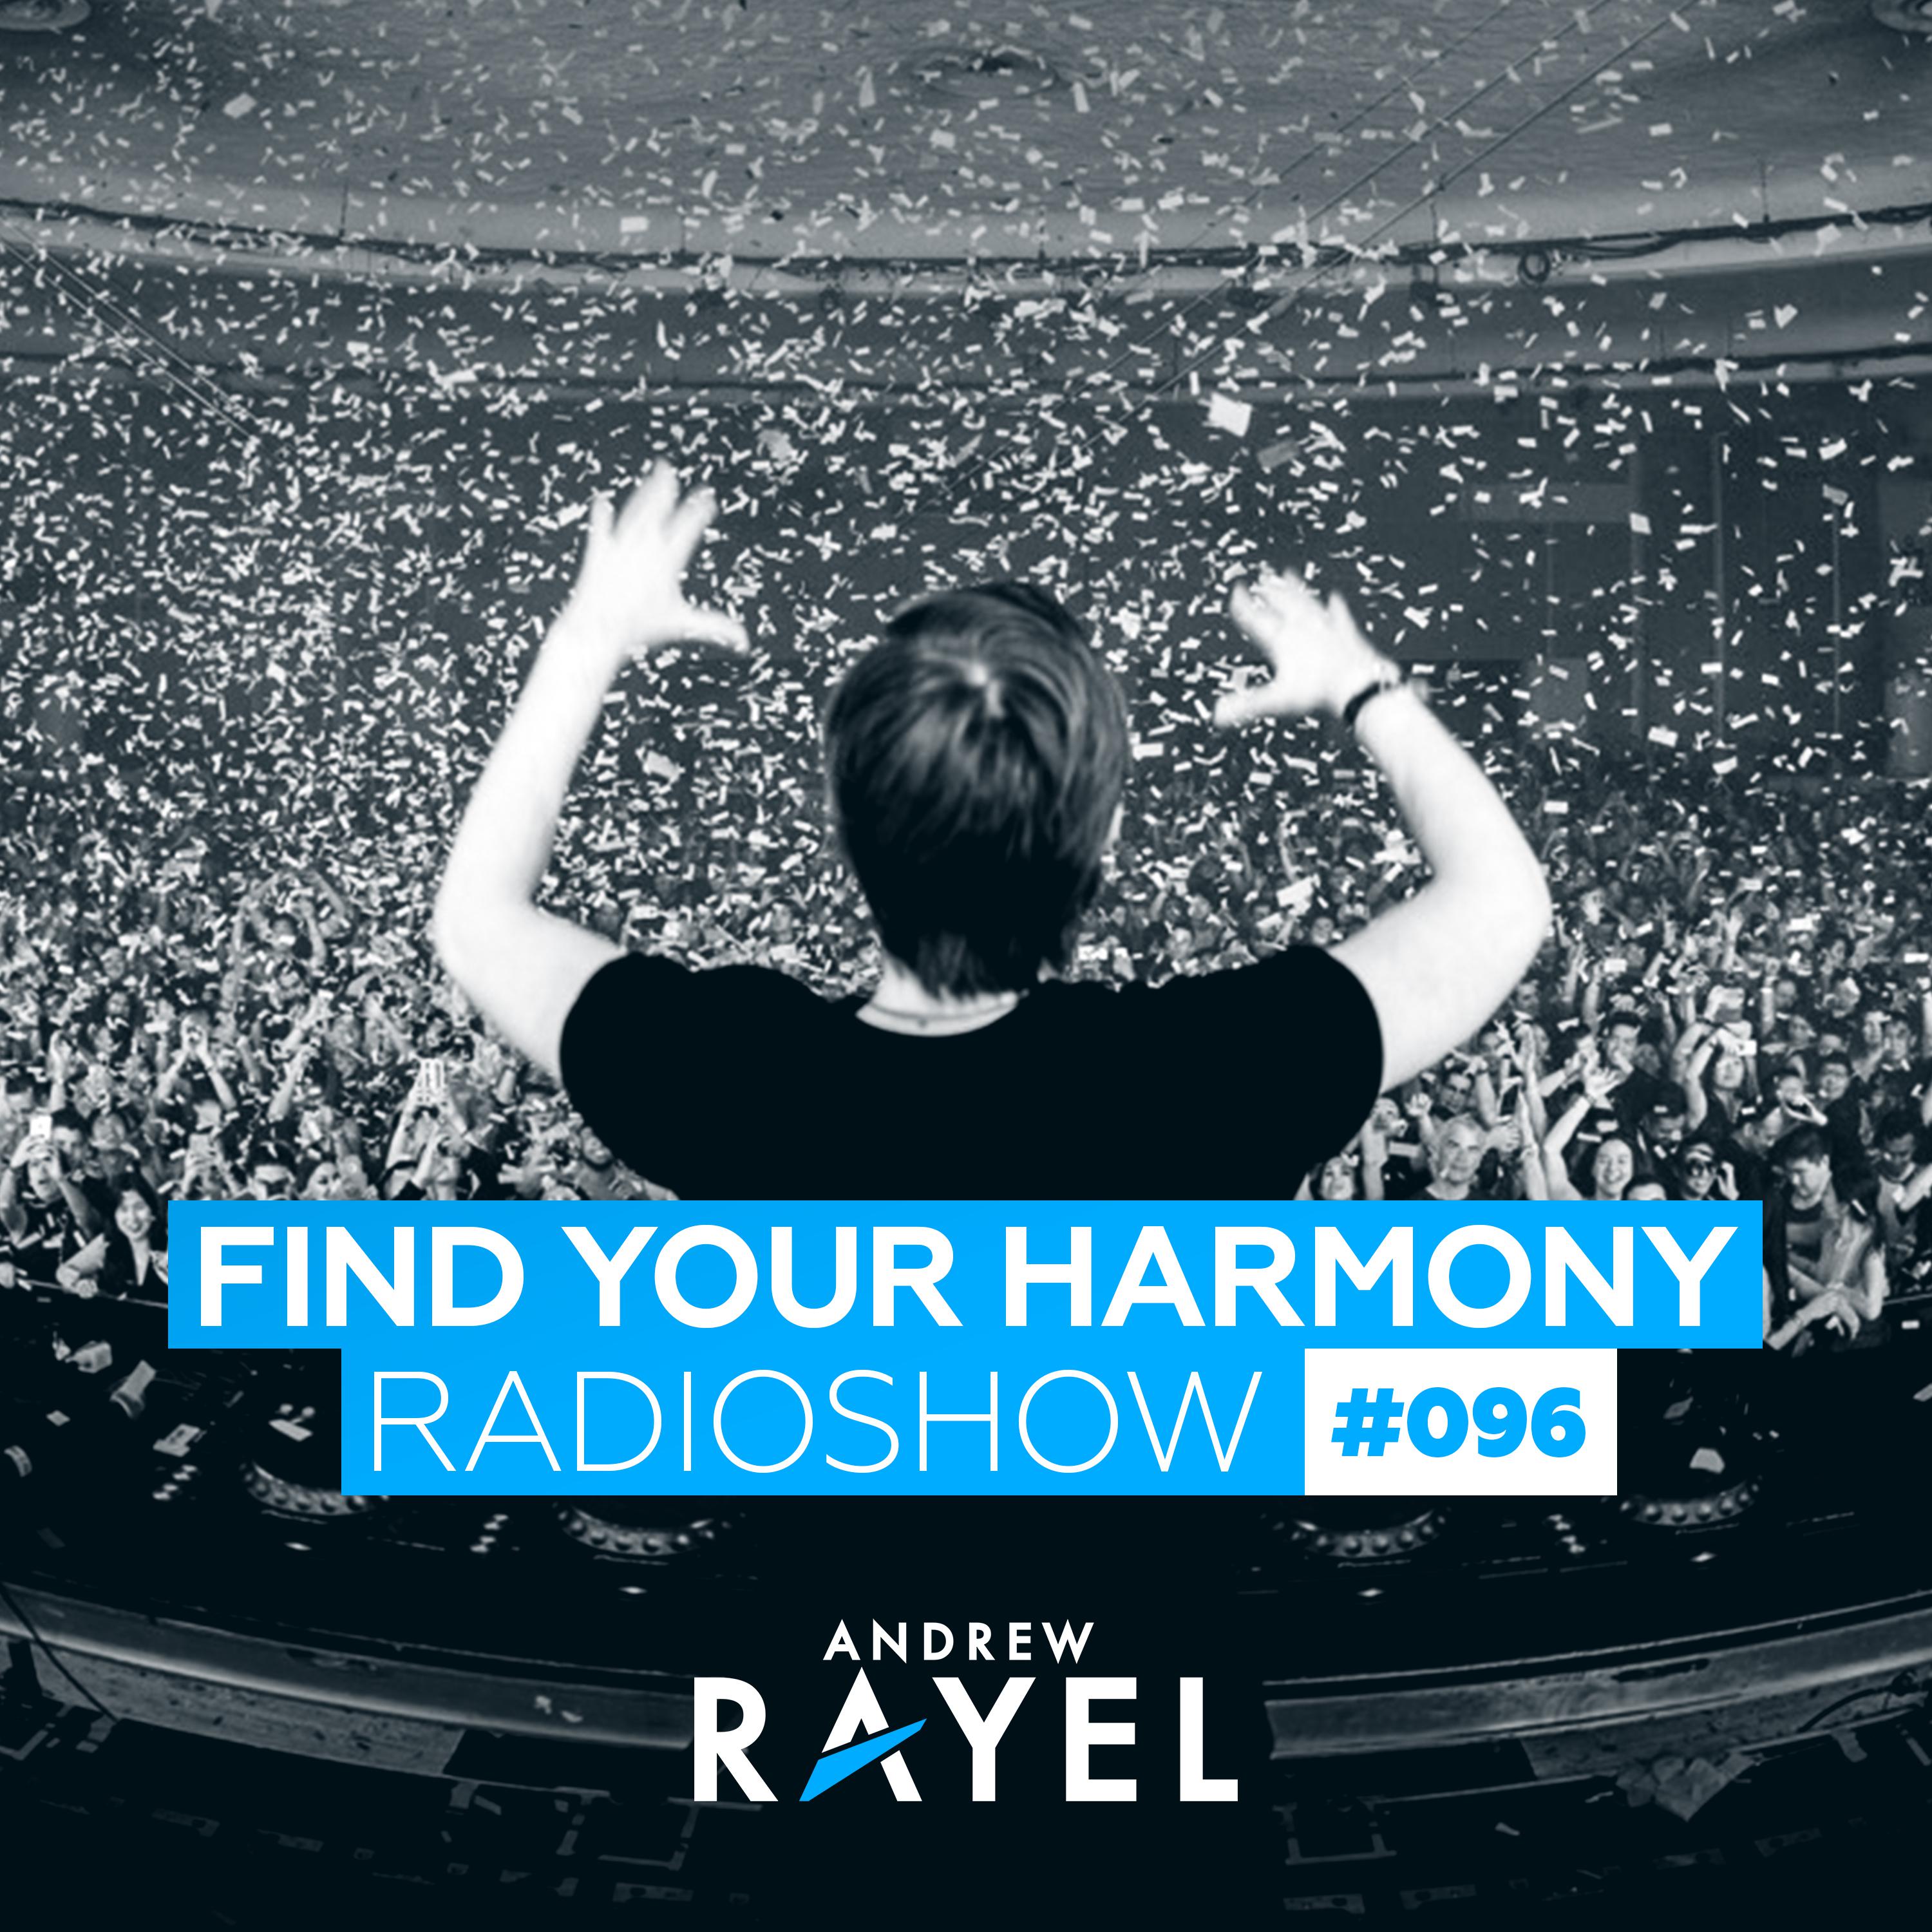 Find Your Harmony Radioshow #096